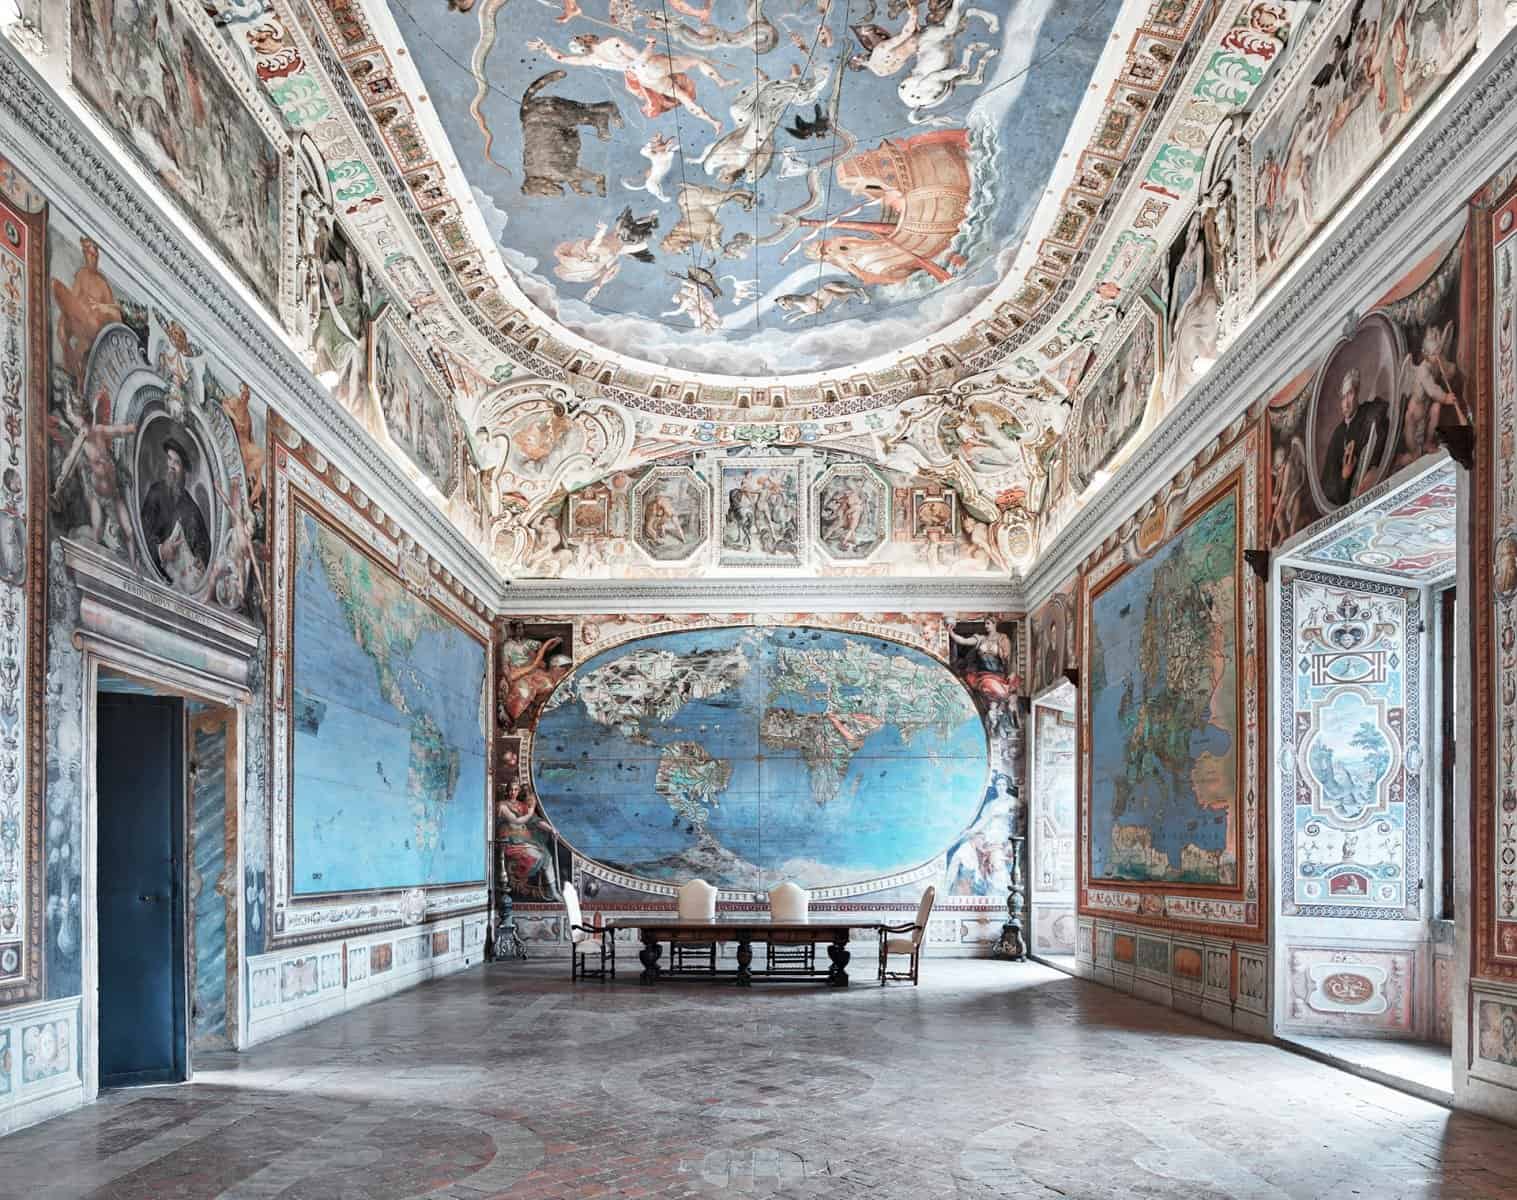 افضل 4 انشطة في القصر الملكي نابولي إيطاليا